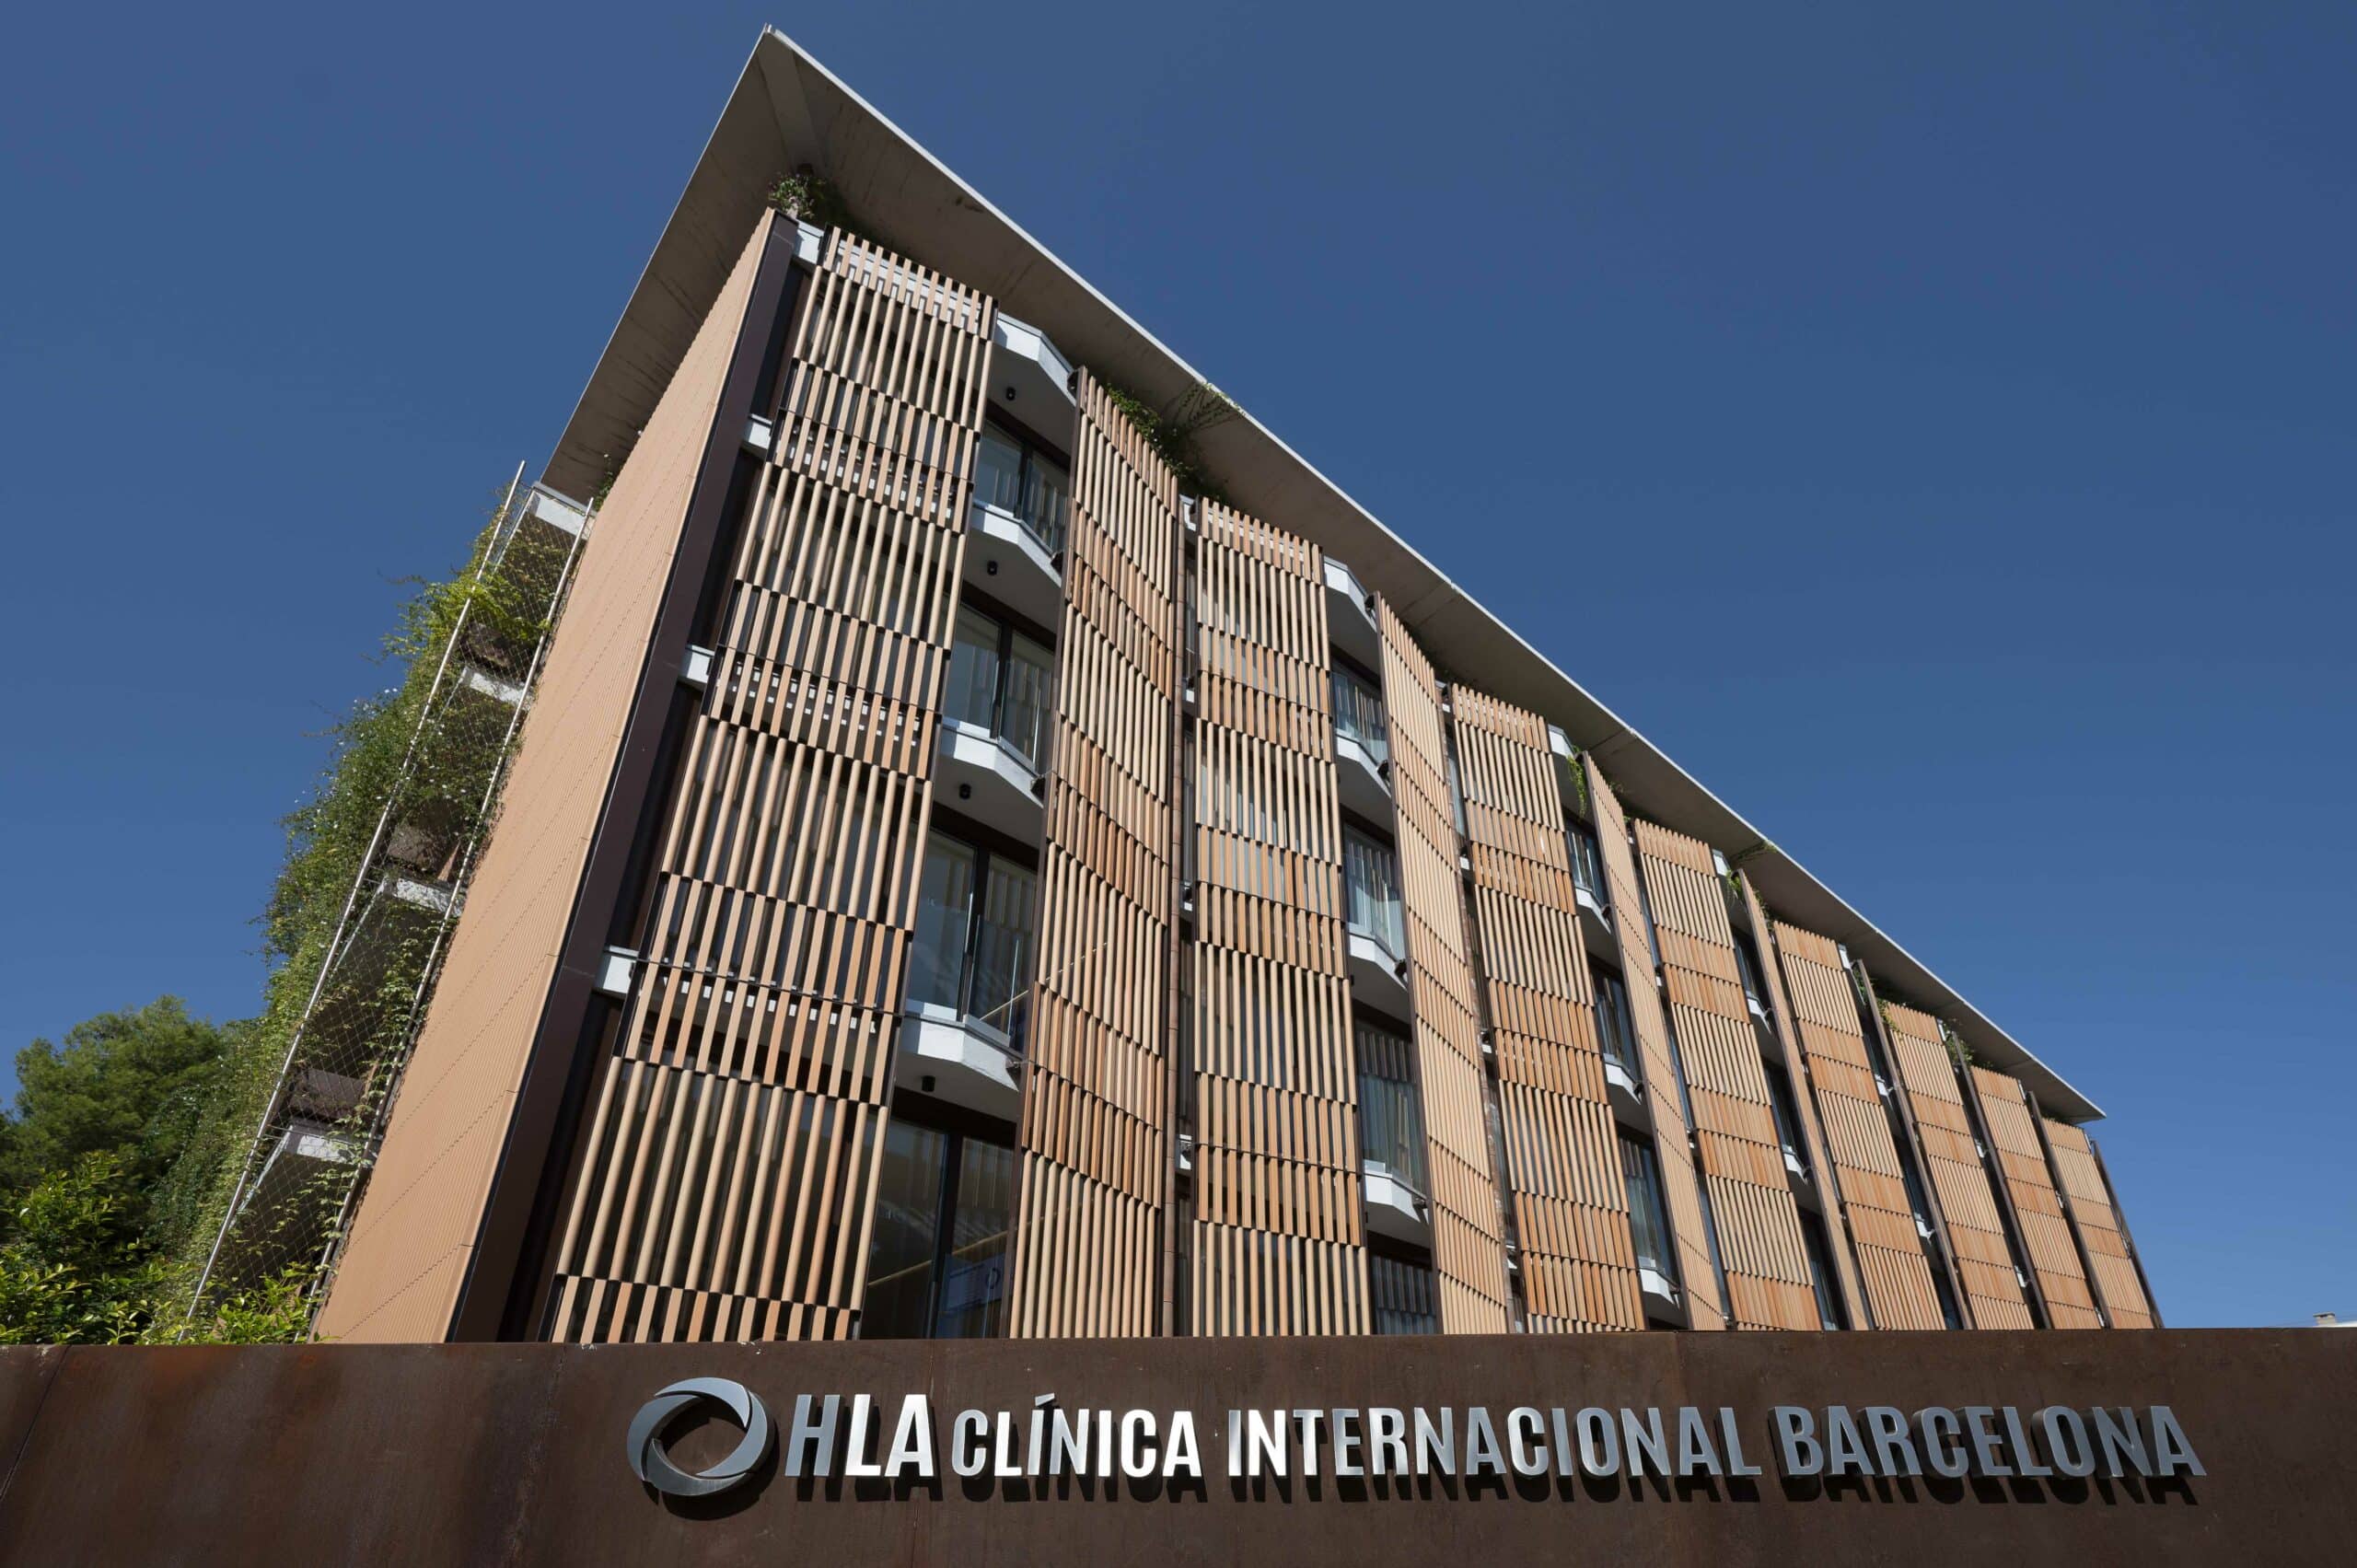 El Grupo HLA abre su primera clínica internacional en Barcelona